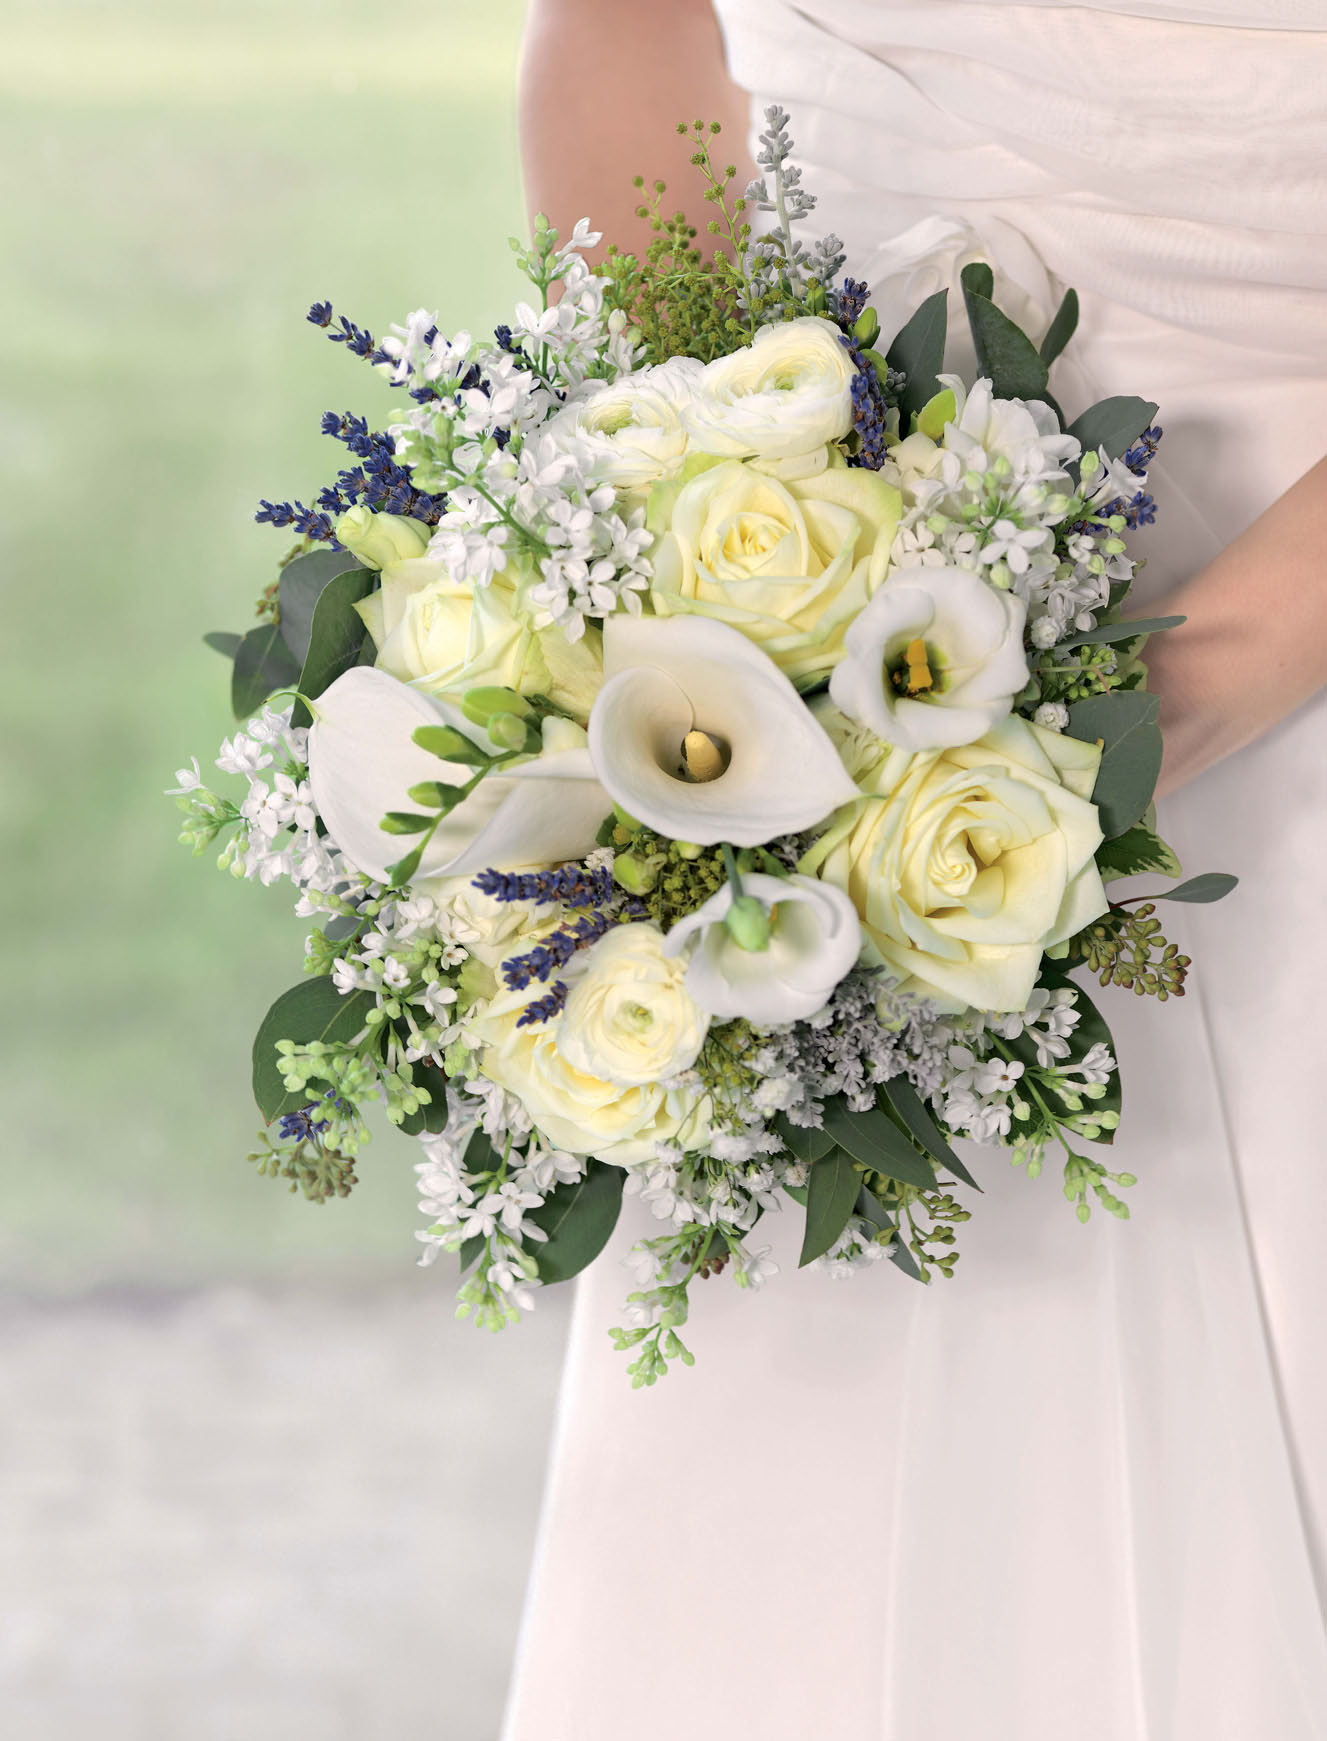 Sandra kann sich für ihren Strauß Blüten, wie zum Beispiel weiße Rosen, Hortensien und Calla, vorstellen.